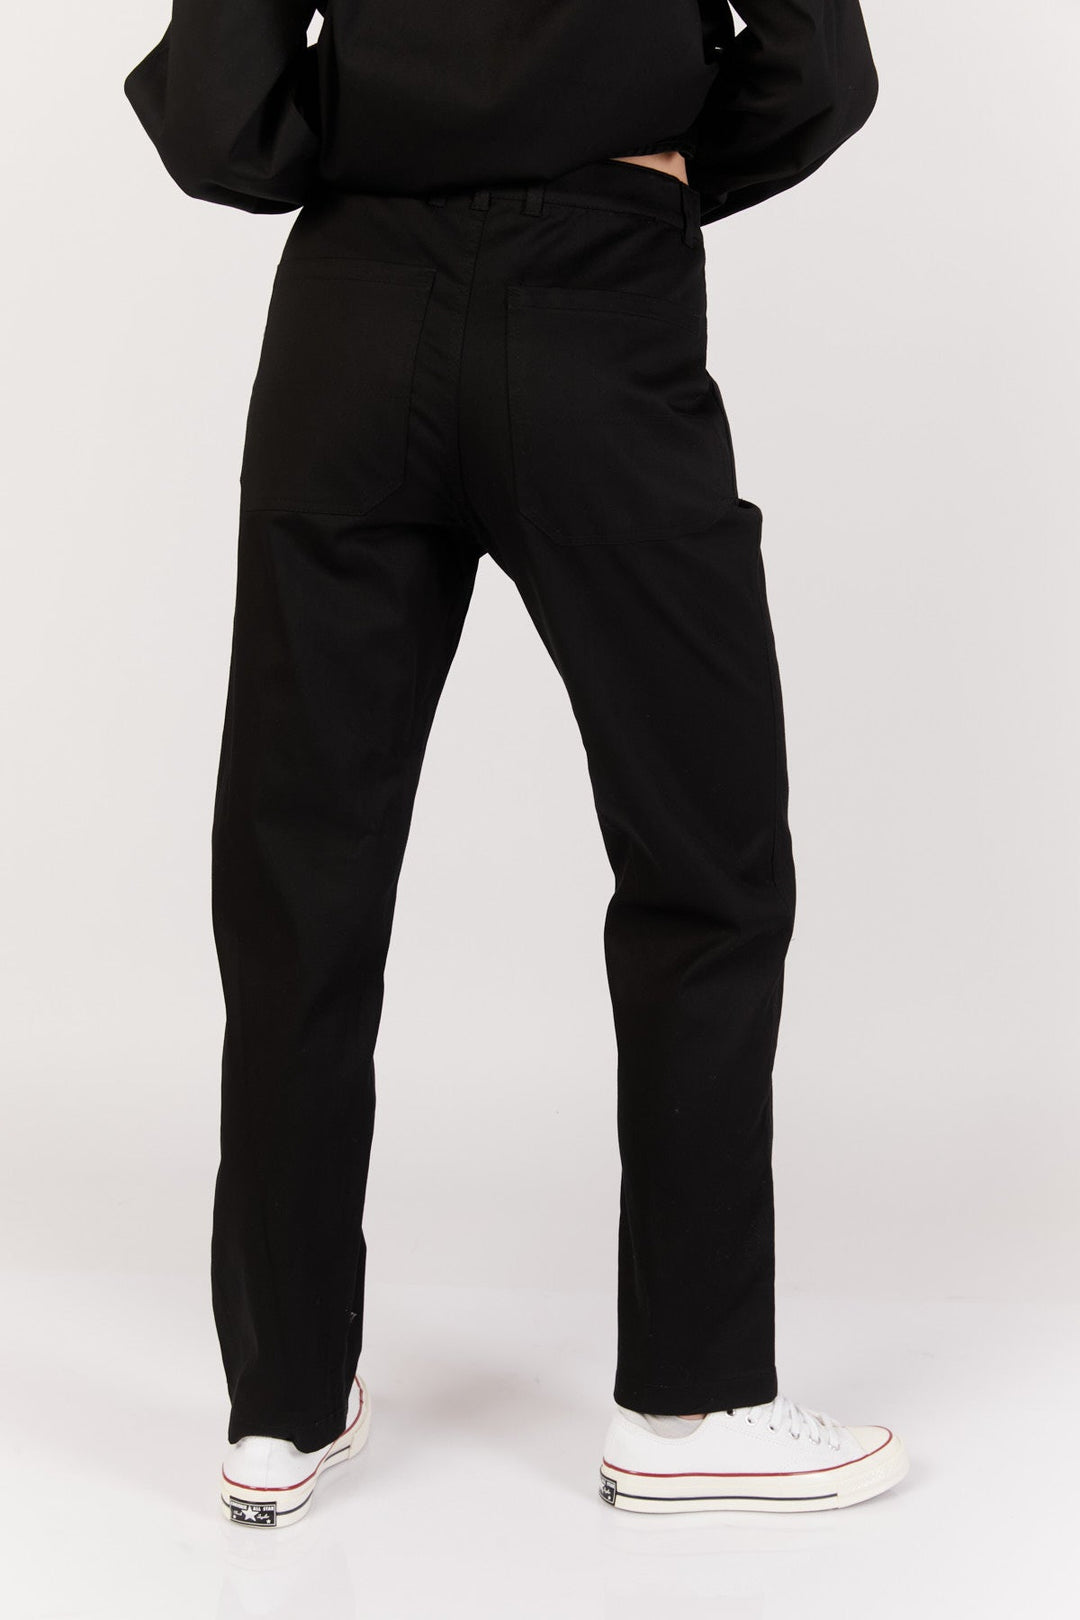 מכנסי לבור בצבע שחור - Moi Collection